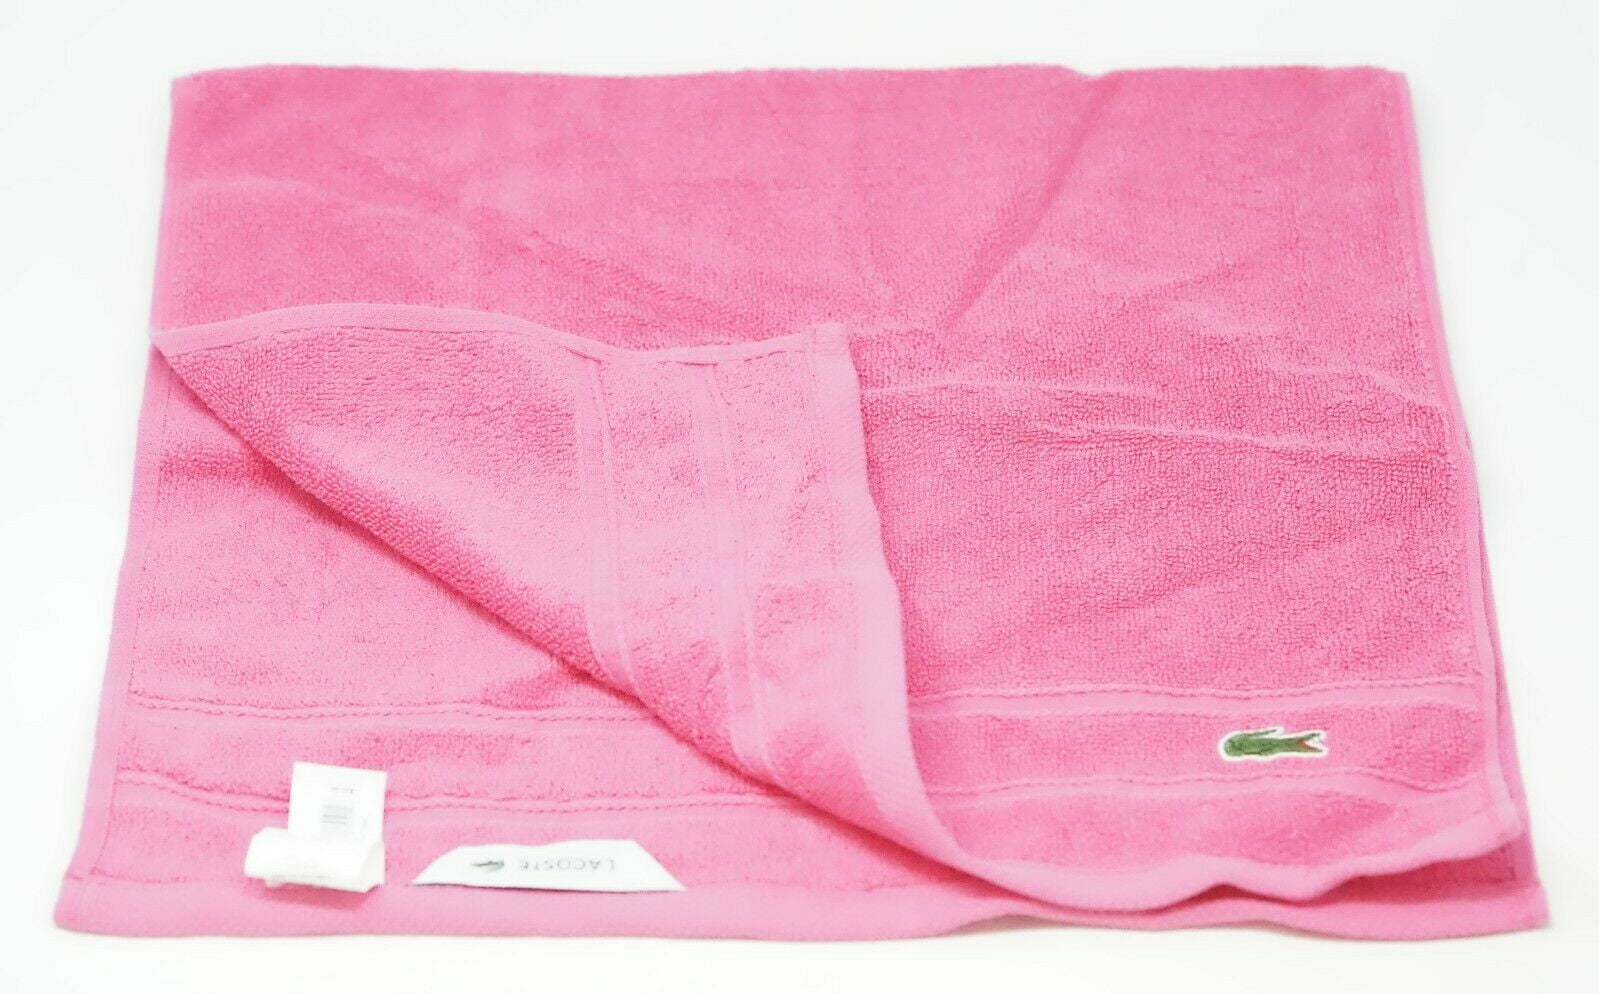 Fandango Pink Lacoste Croc 16" x 30" Cotton Hand Towel 